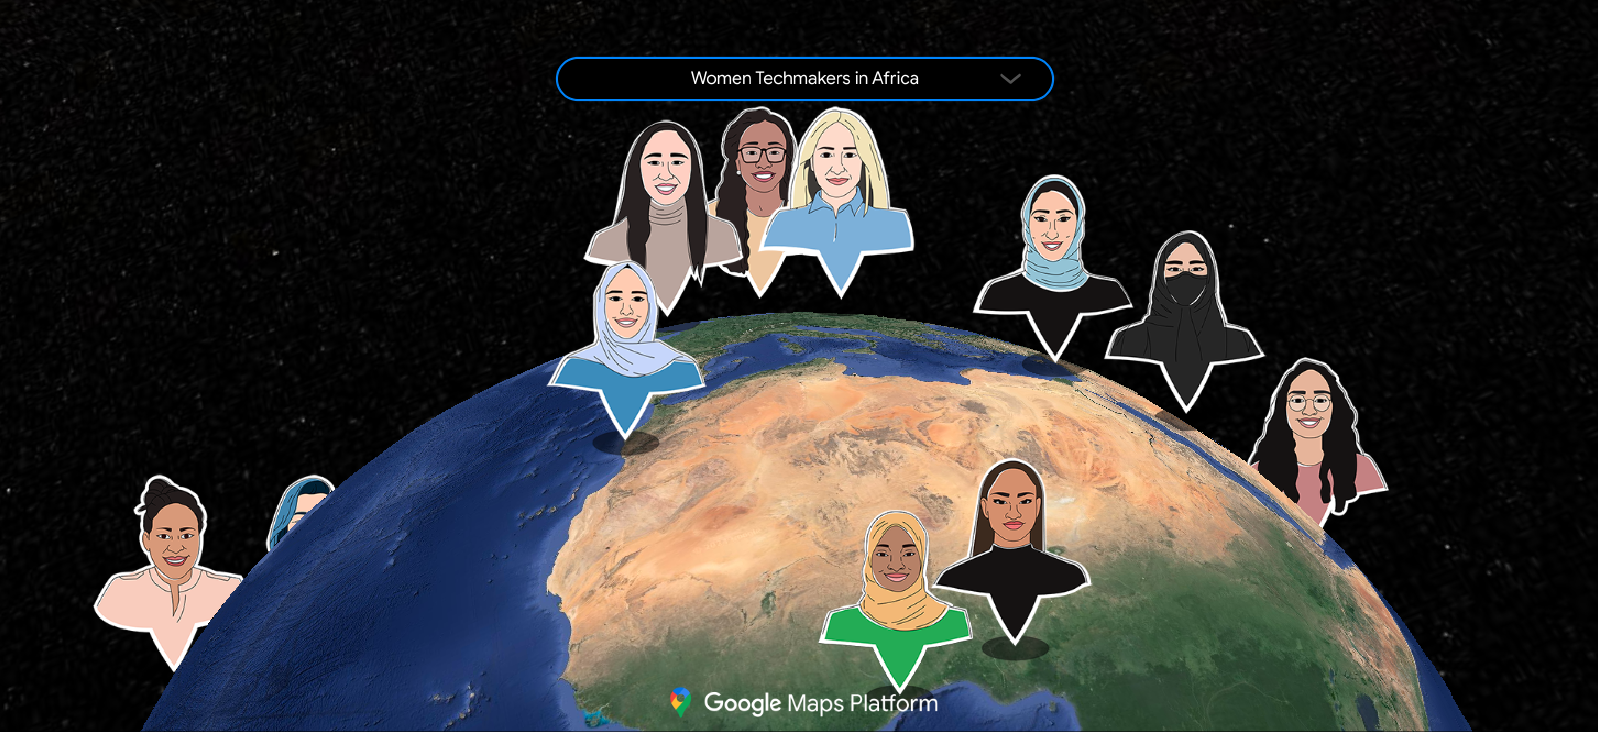 Un mapa que muestra la red global de embajadoras de Women Techmakers, ilustrada como un grupo diverso de personas posicionadas en un mapa según sus respectivos países.